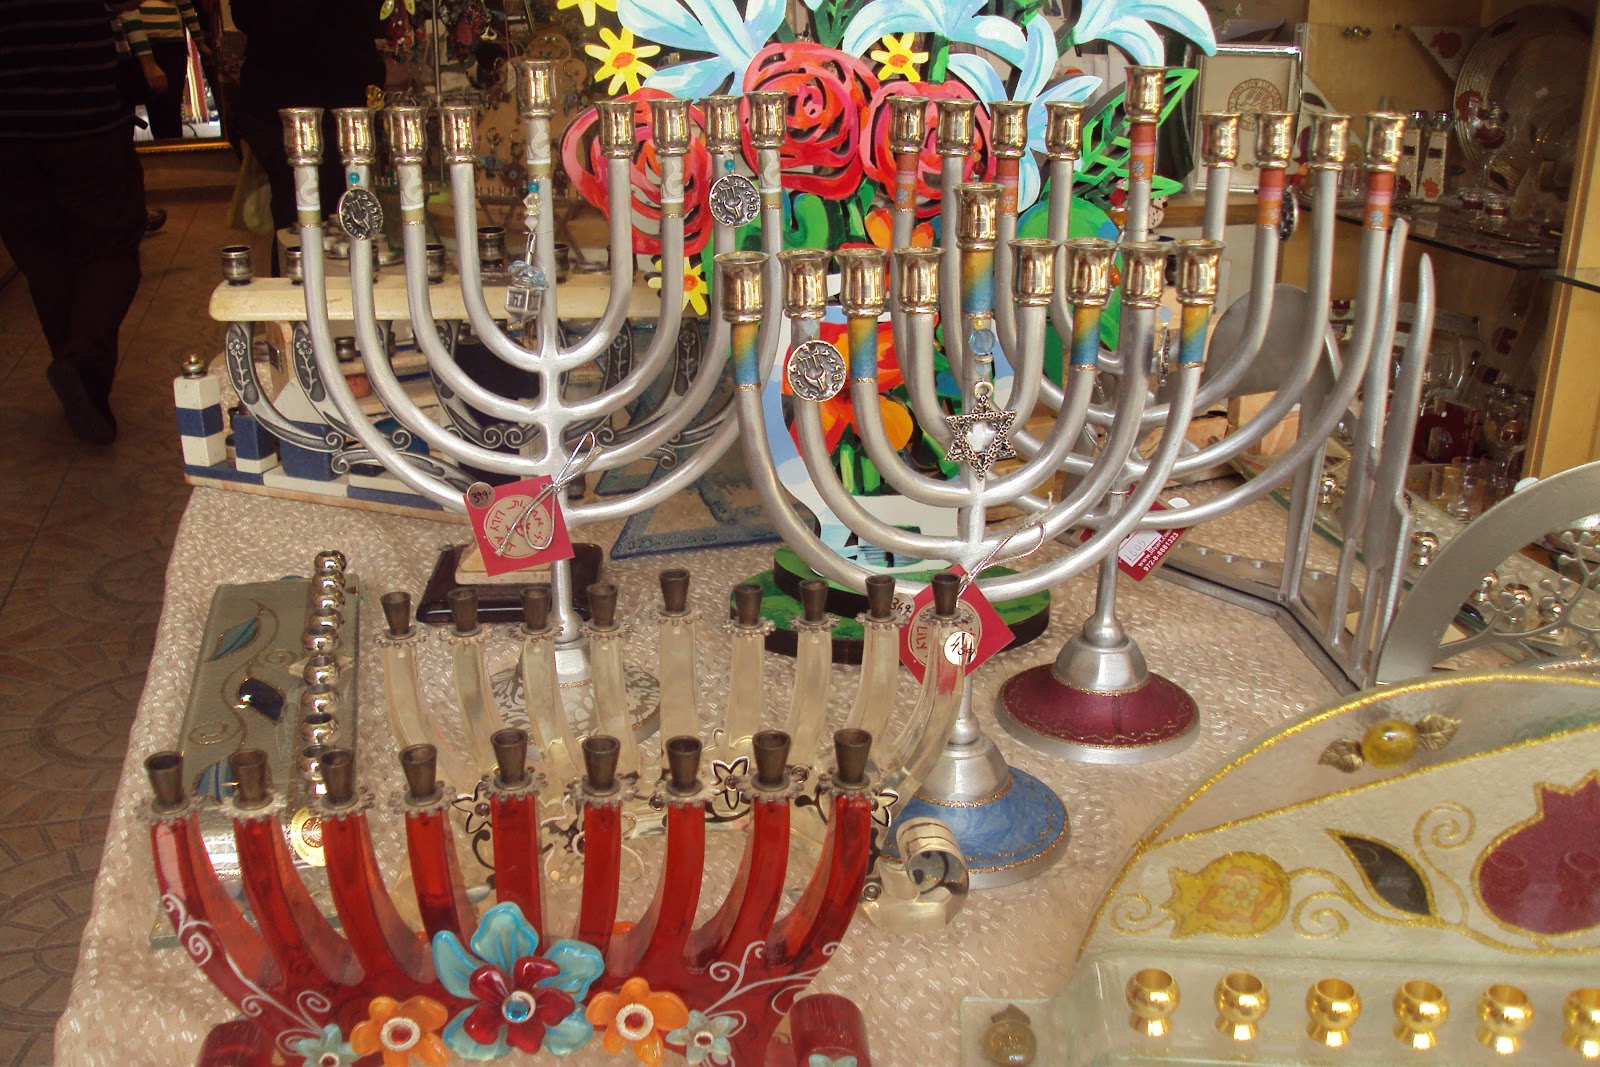 Israel Tour - イスラエルツアー: ハヌカのお祭り 2012